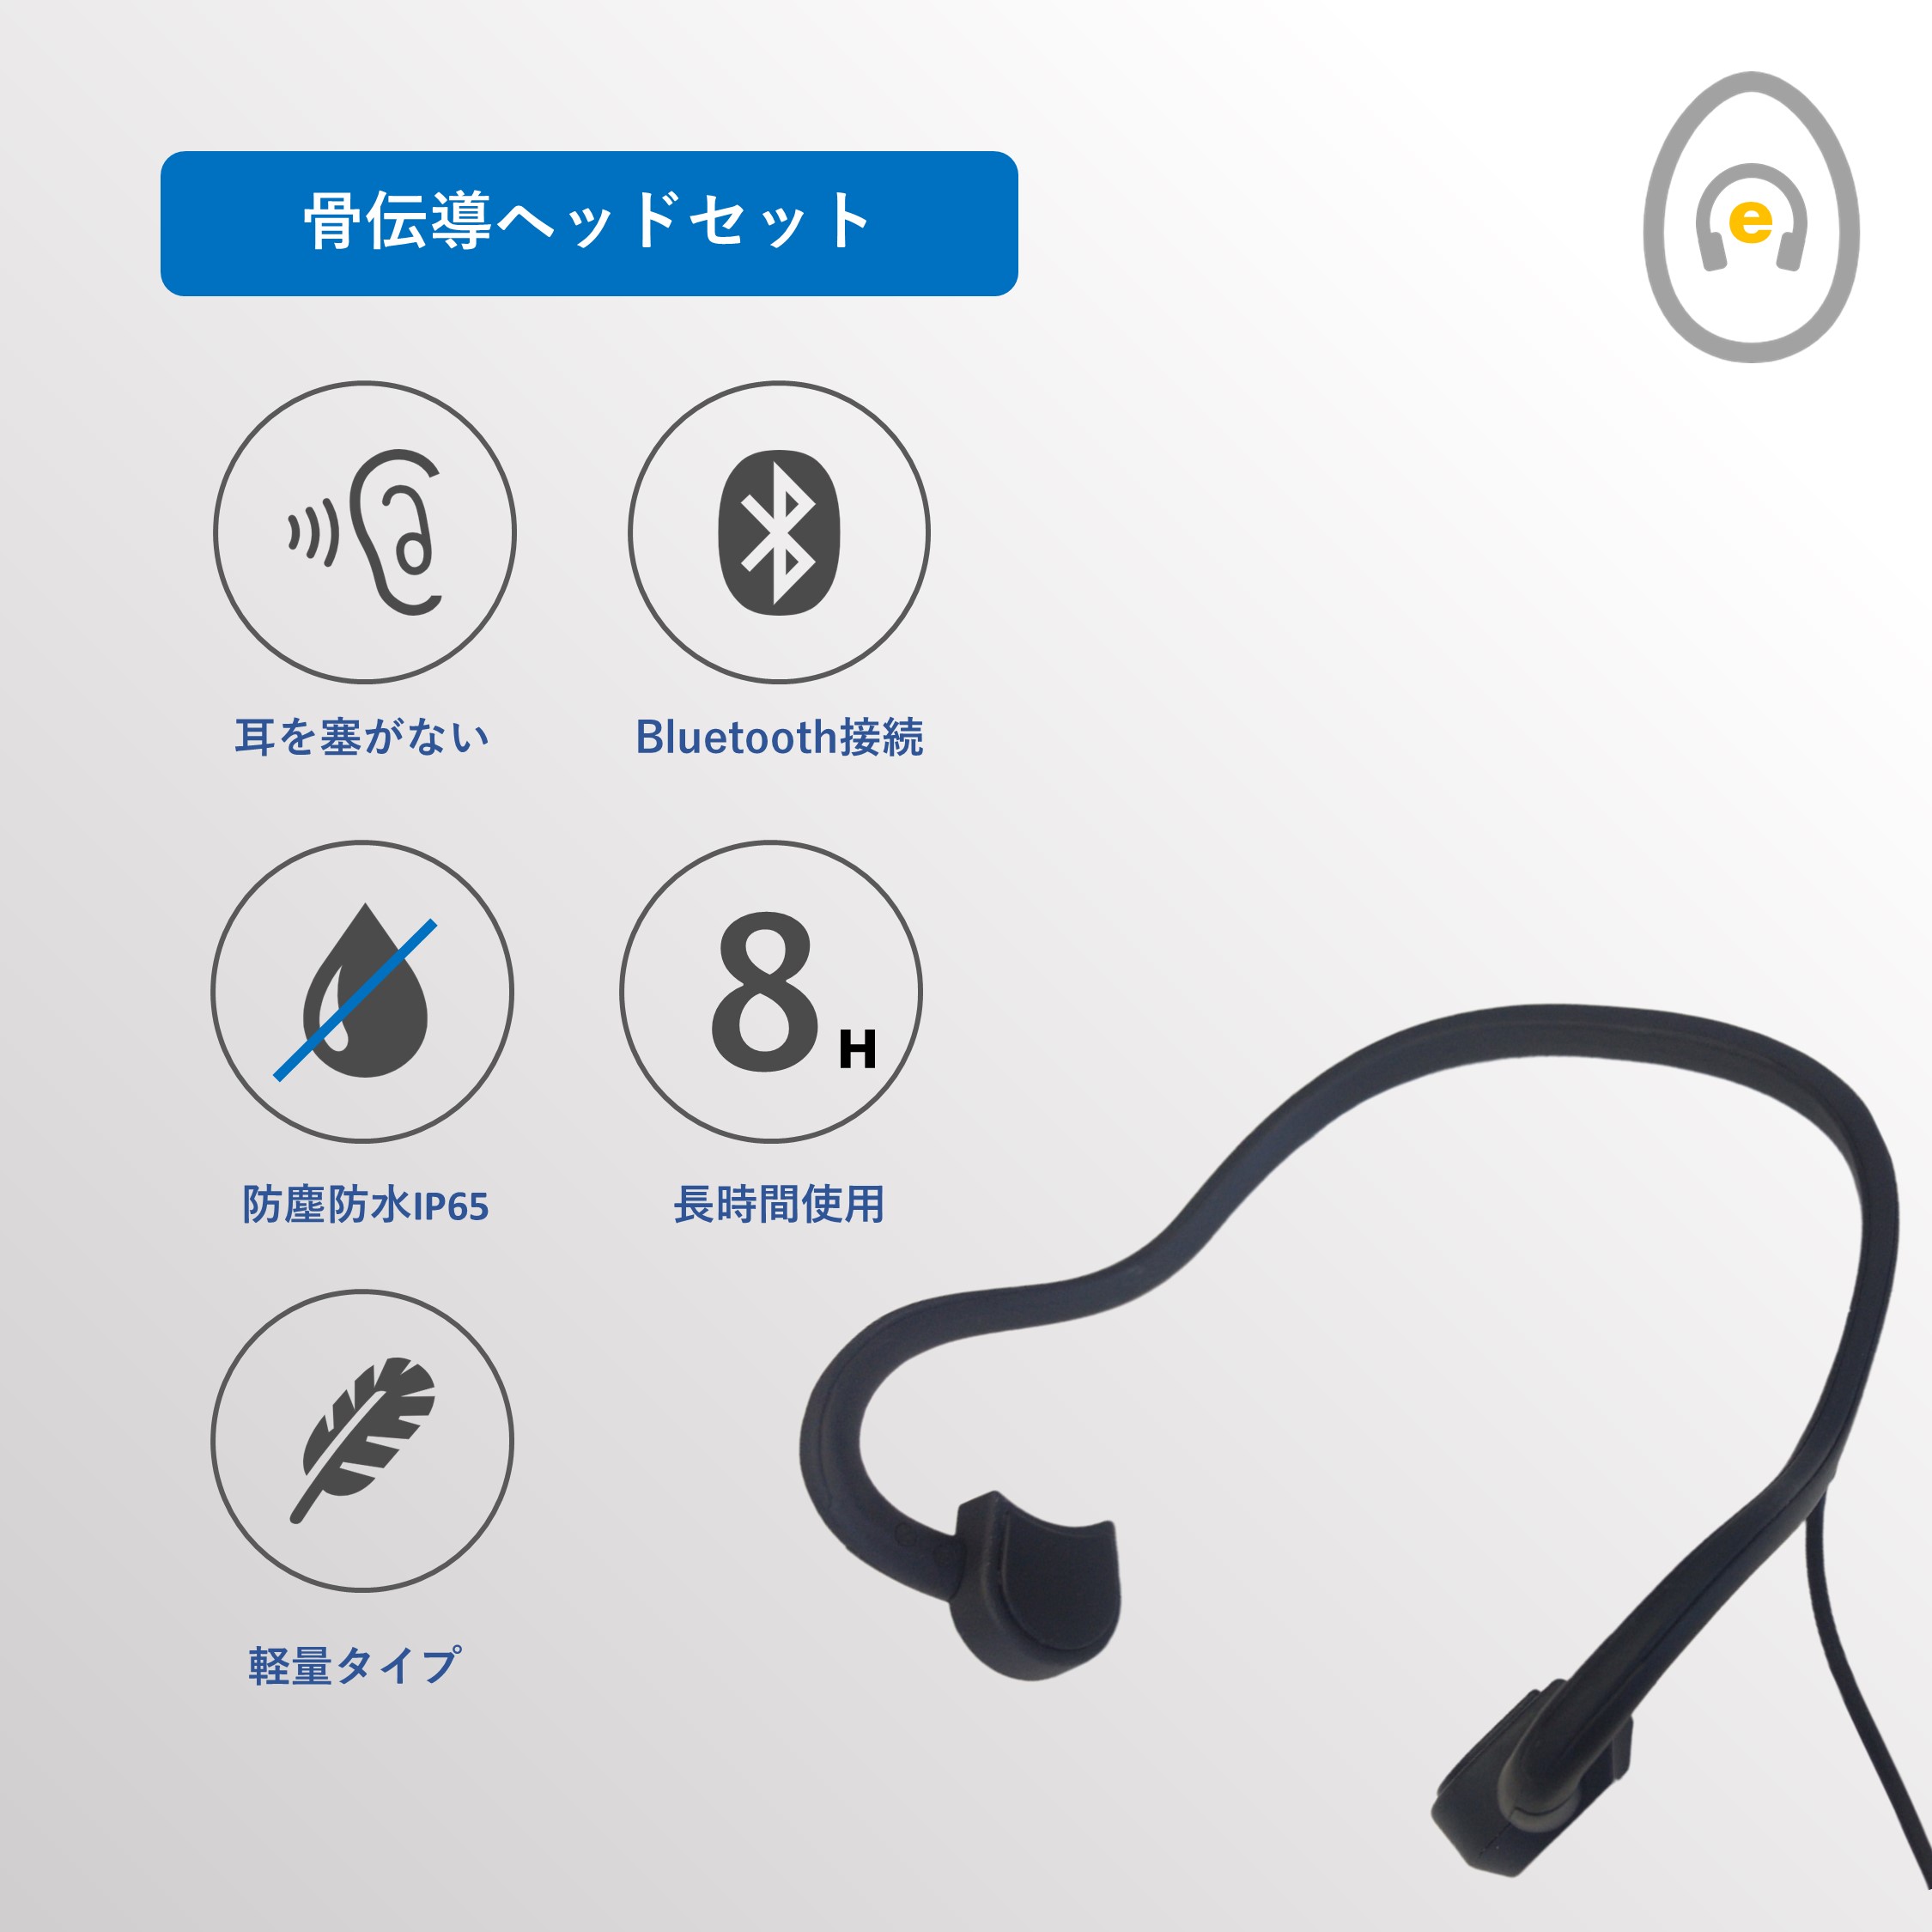 【スポーツの日】骨伝導イヤホン ブラック  Bluetooth 軽量タイプ オープンイヤー 耳掛け式 eggBT